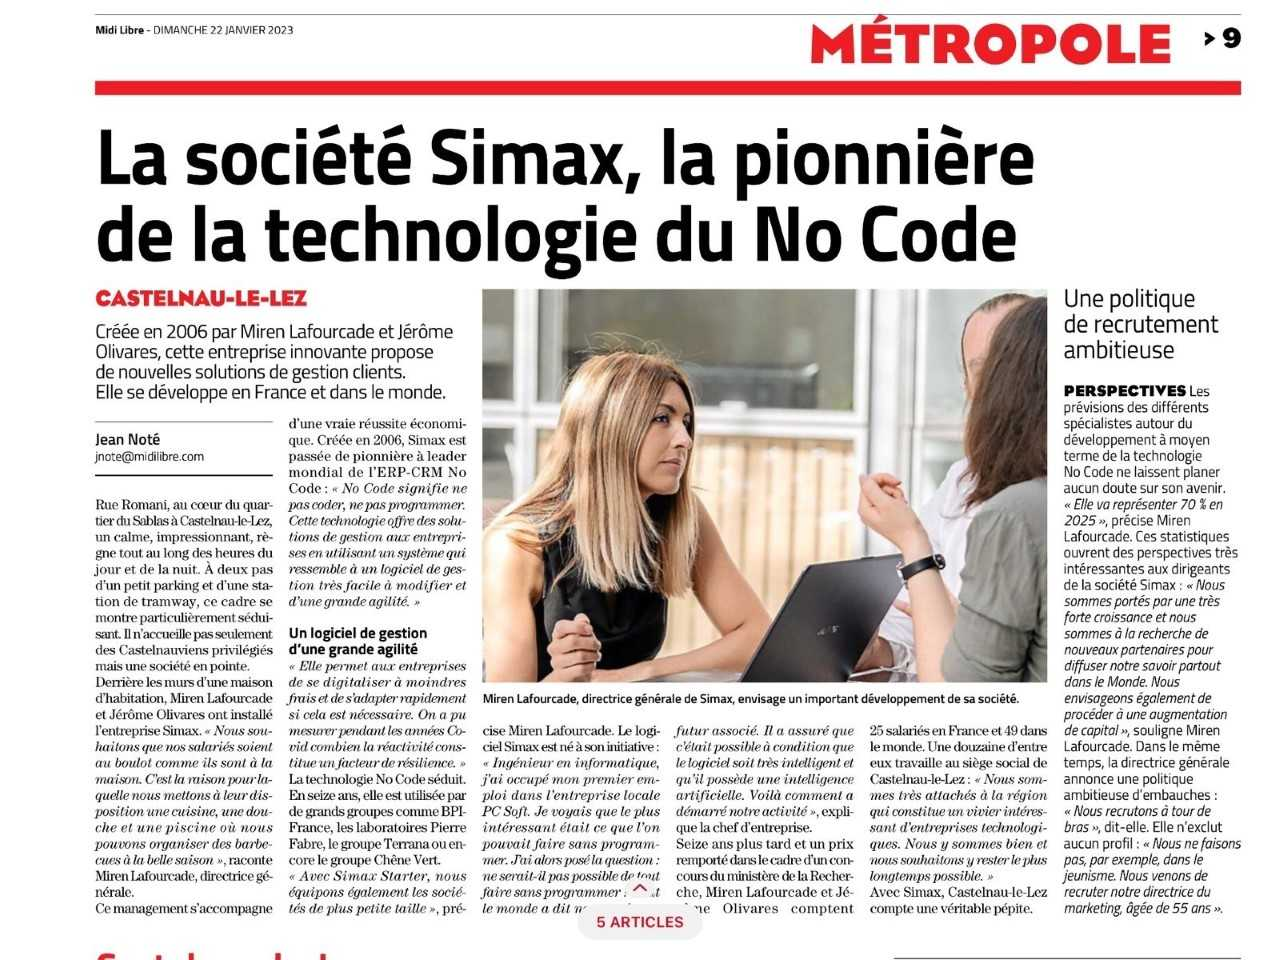 SIMAX dans un article de Midi Libre avec les mots de Miren Lafourcade, Directrice Générale de SIMAX